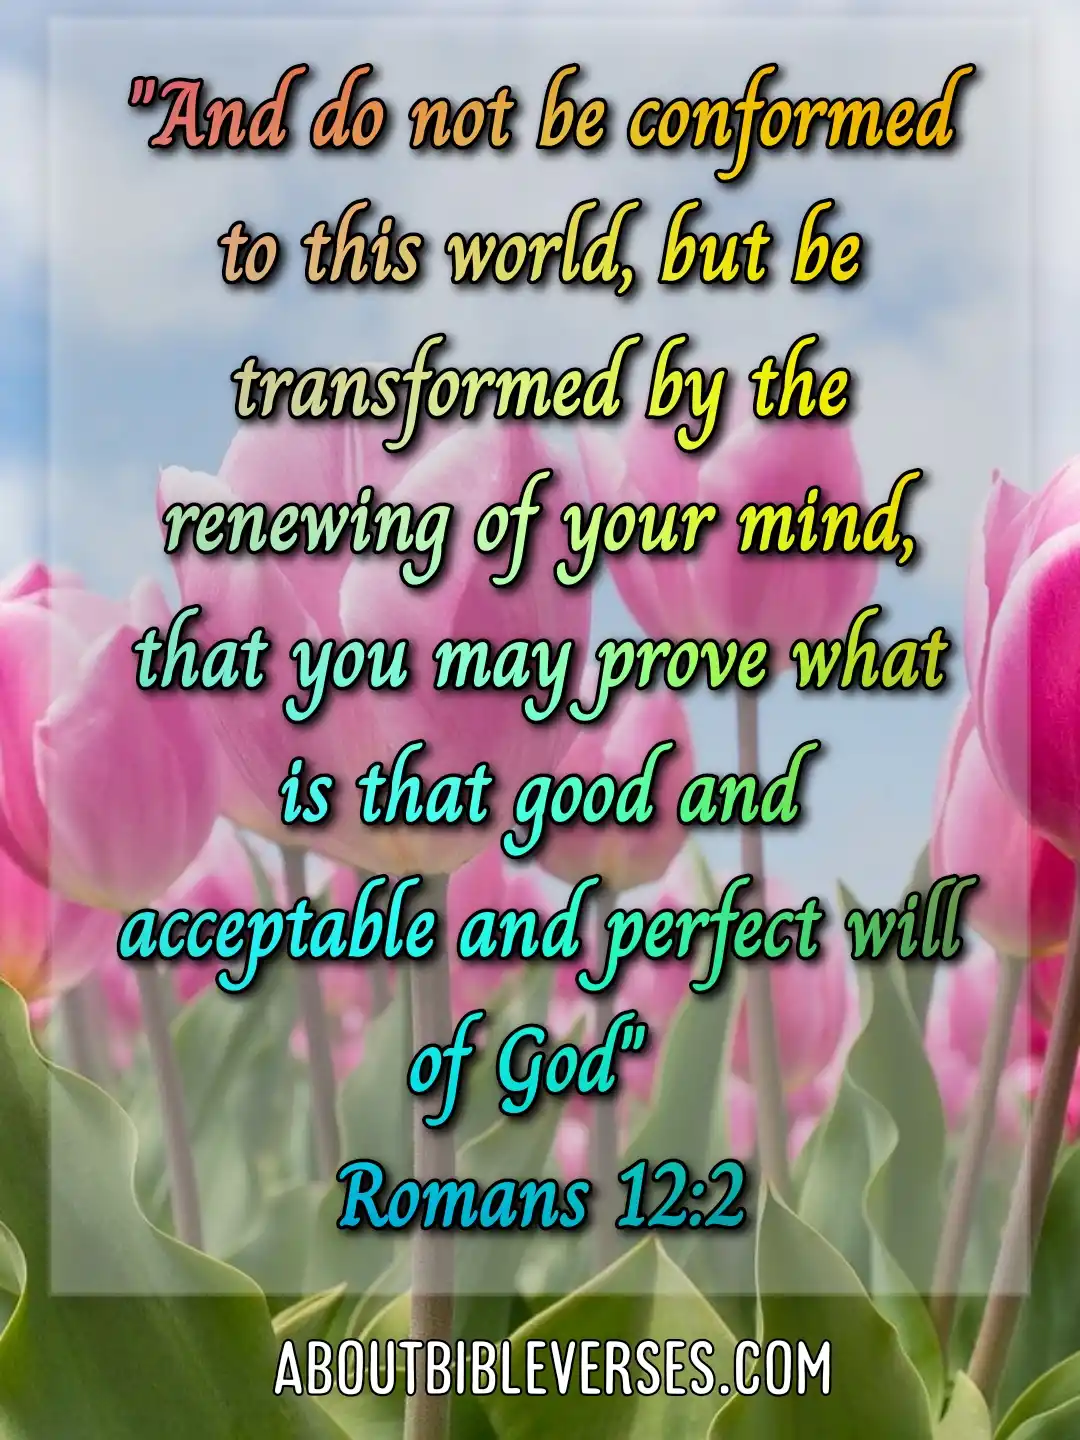 Bible verses about God's plans (Romans 12:2)